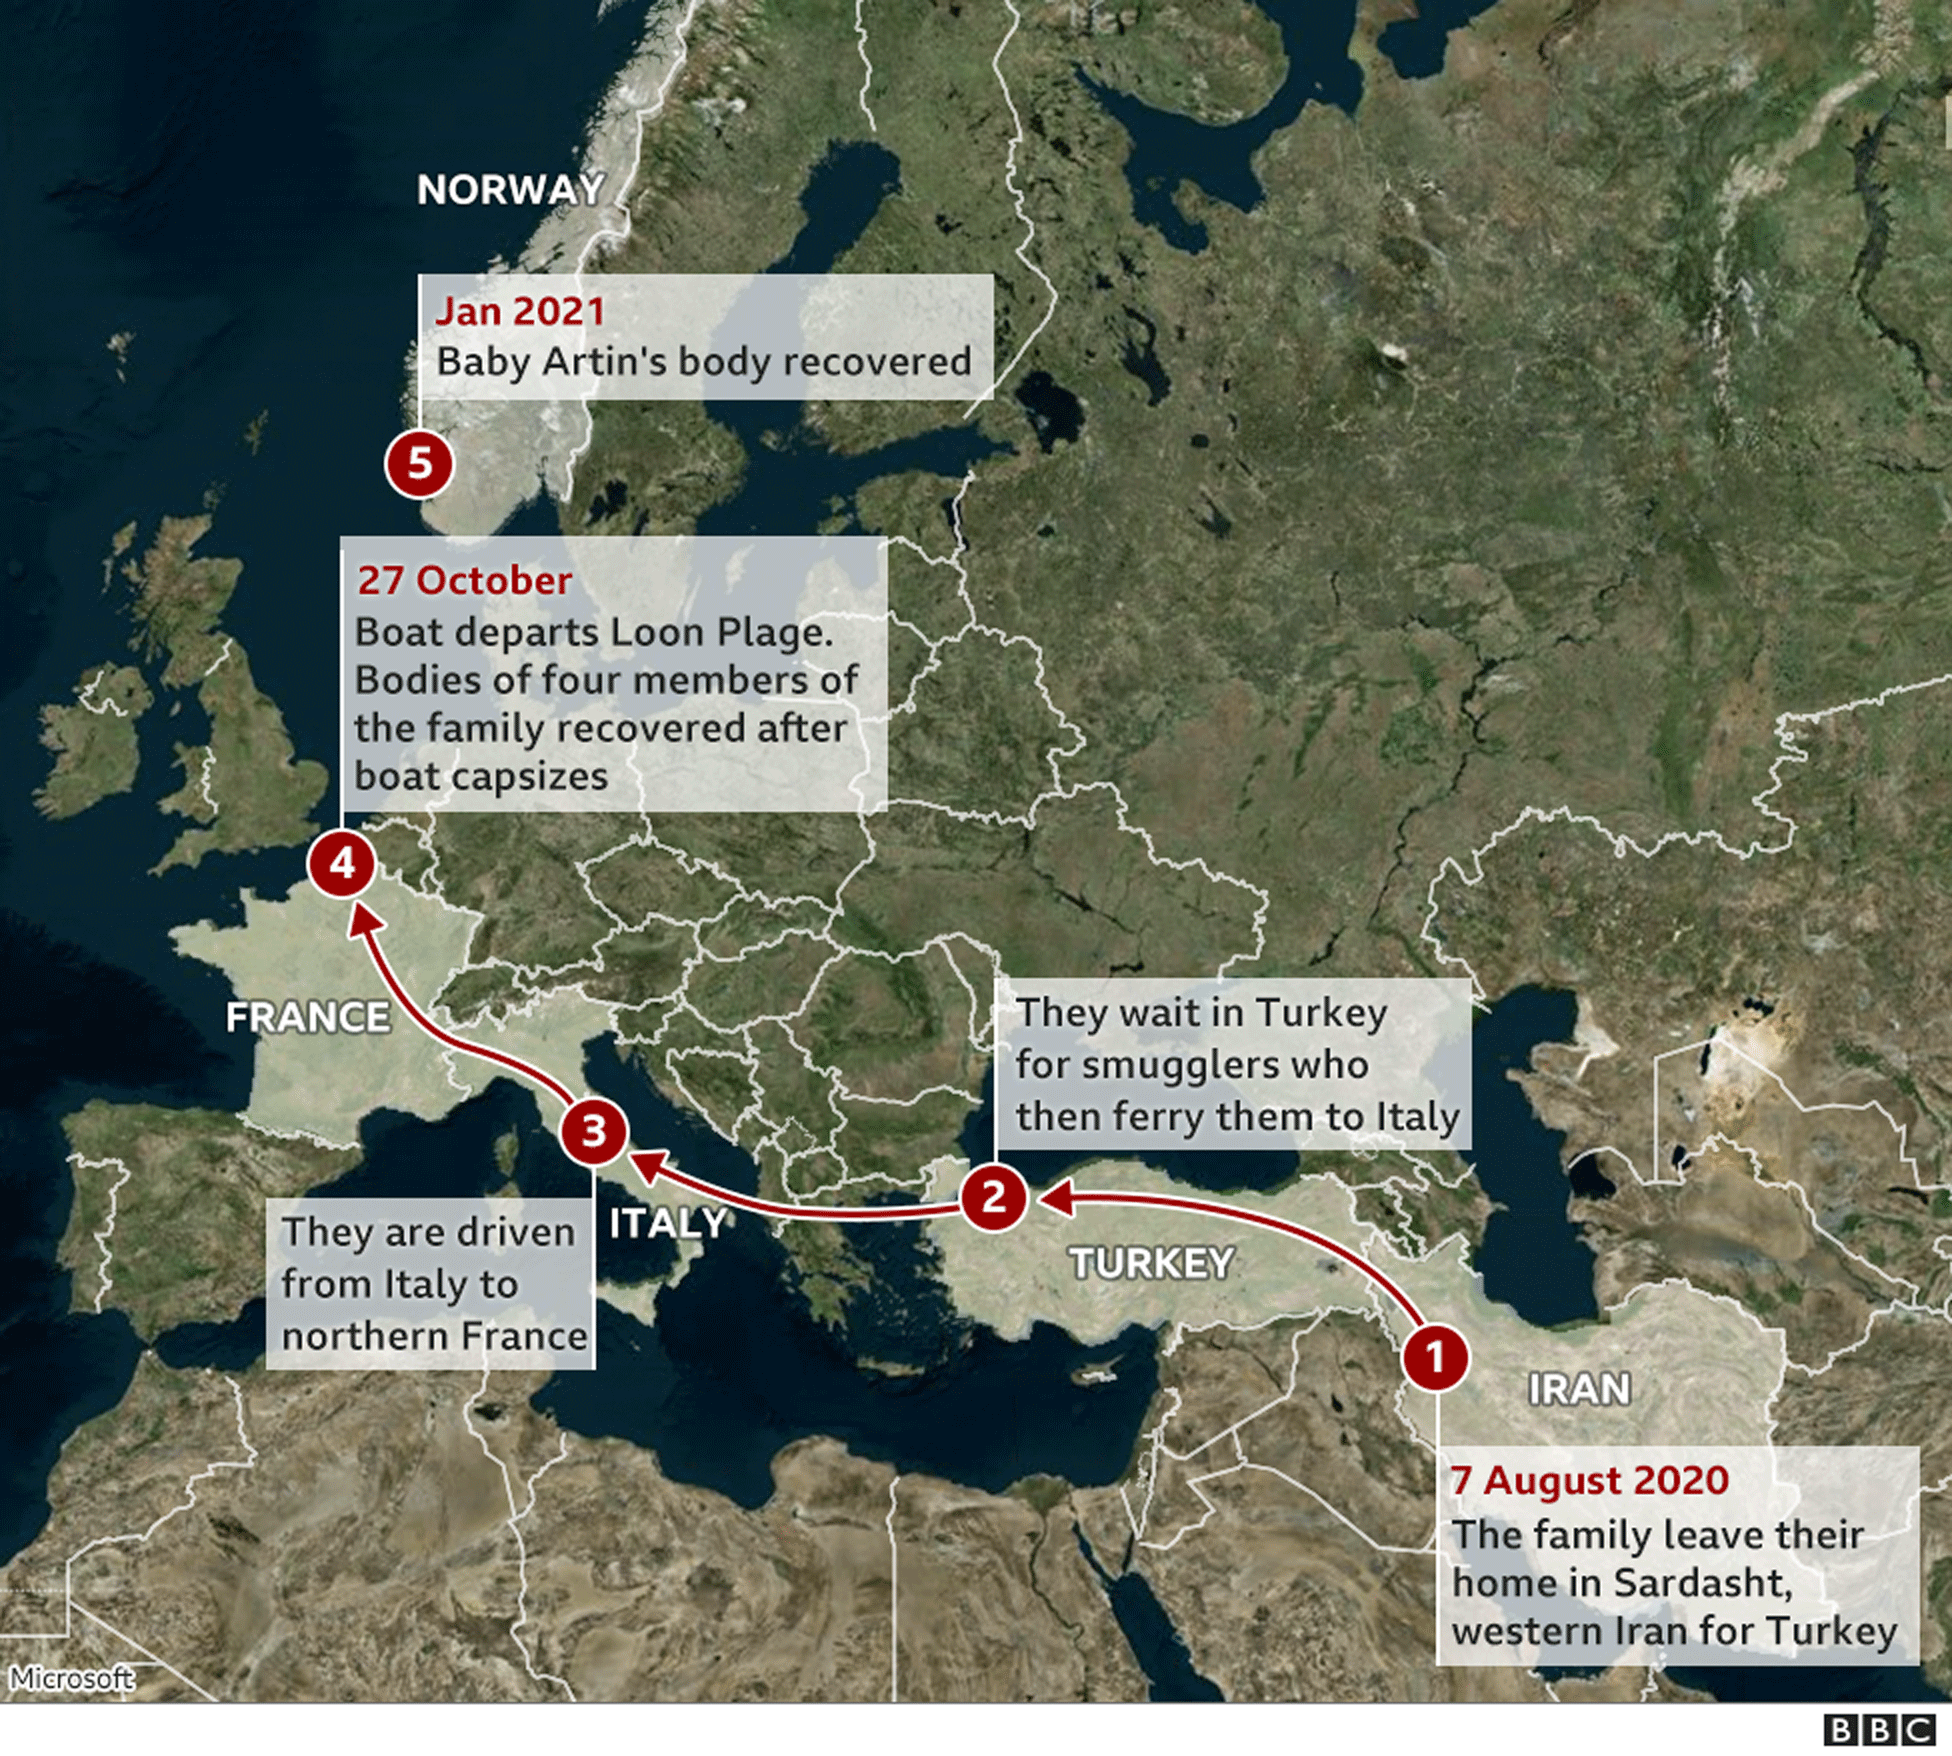 ノルウェー海岸の遺体 英仏海峡で沈没した難民船のイラン男児と判明 cニュース